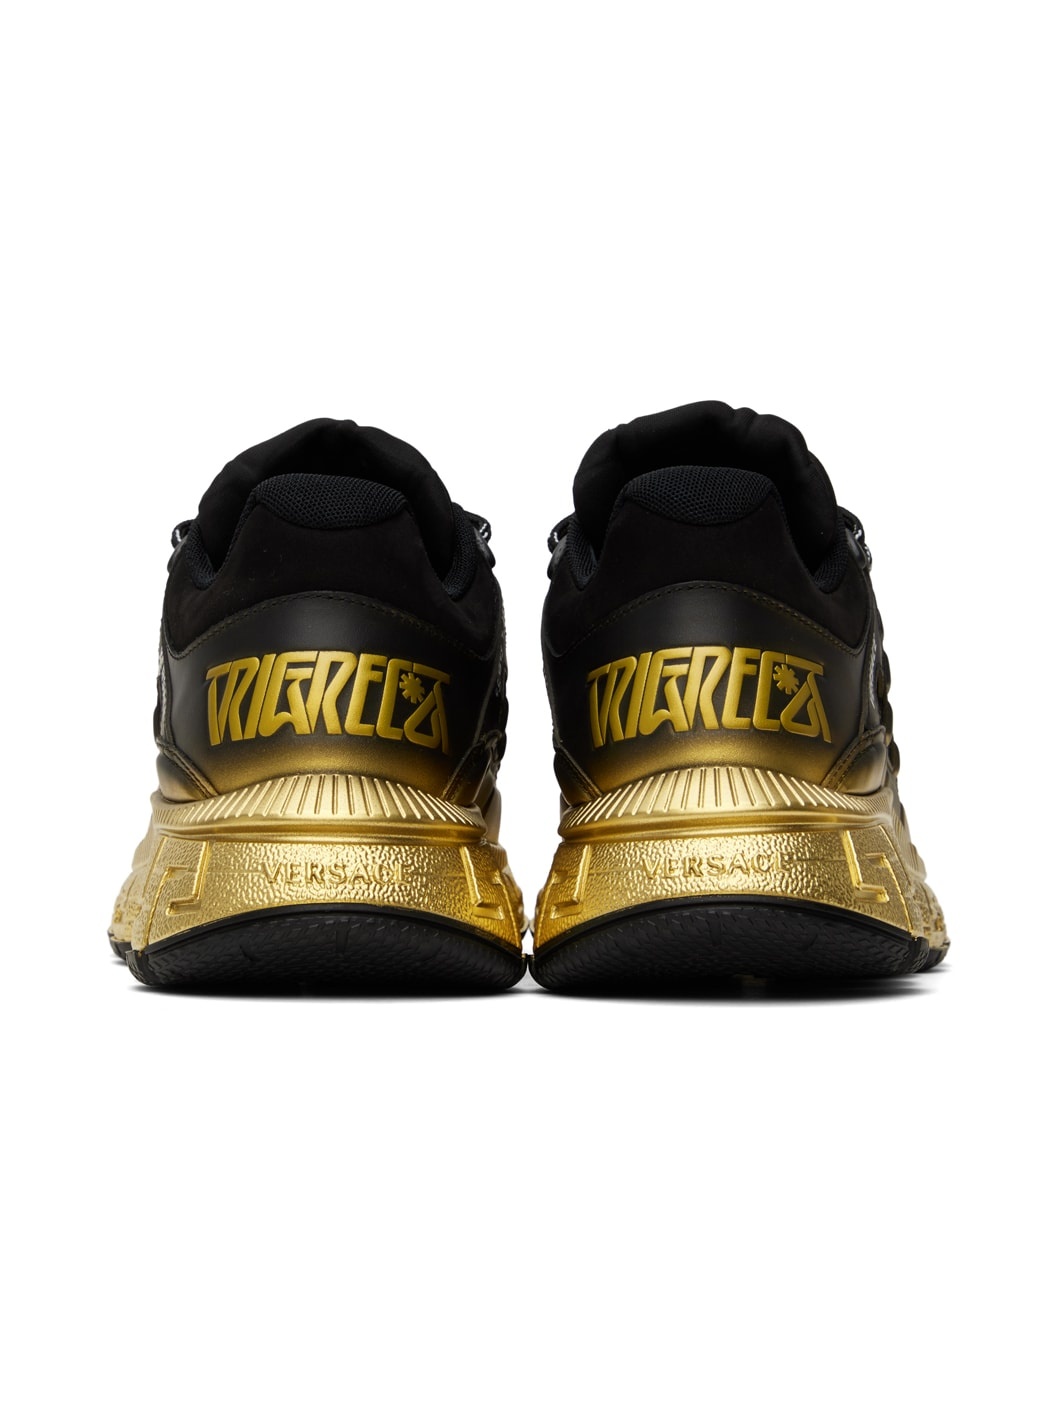 Black & Gold Trigreca Sneakers - 2